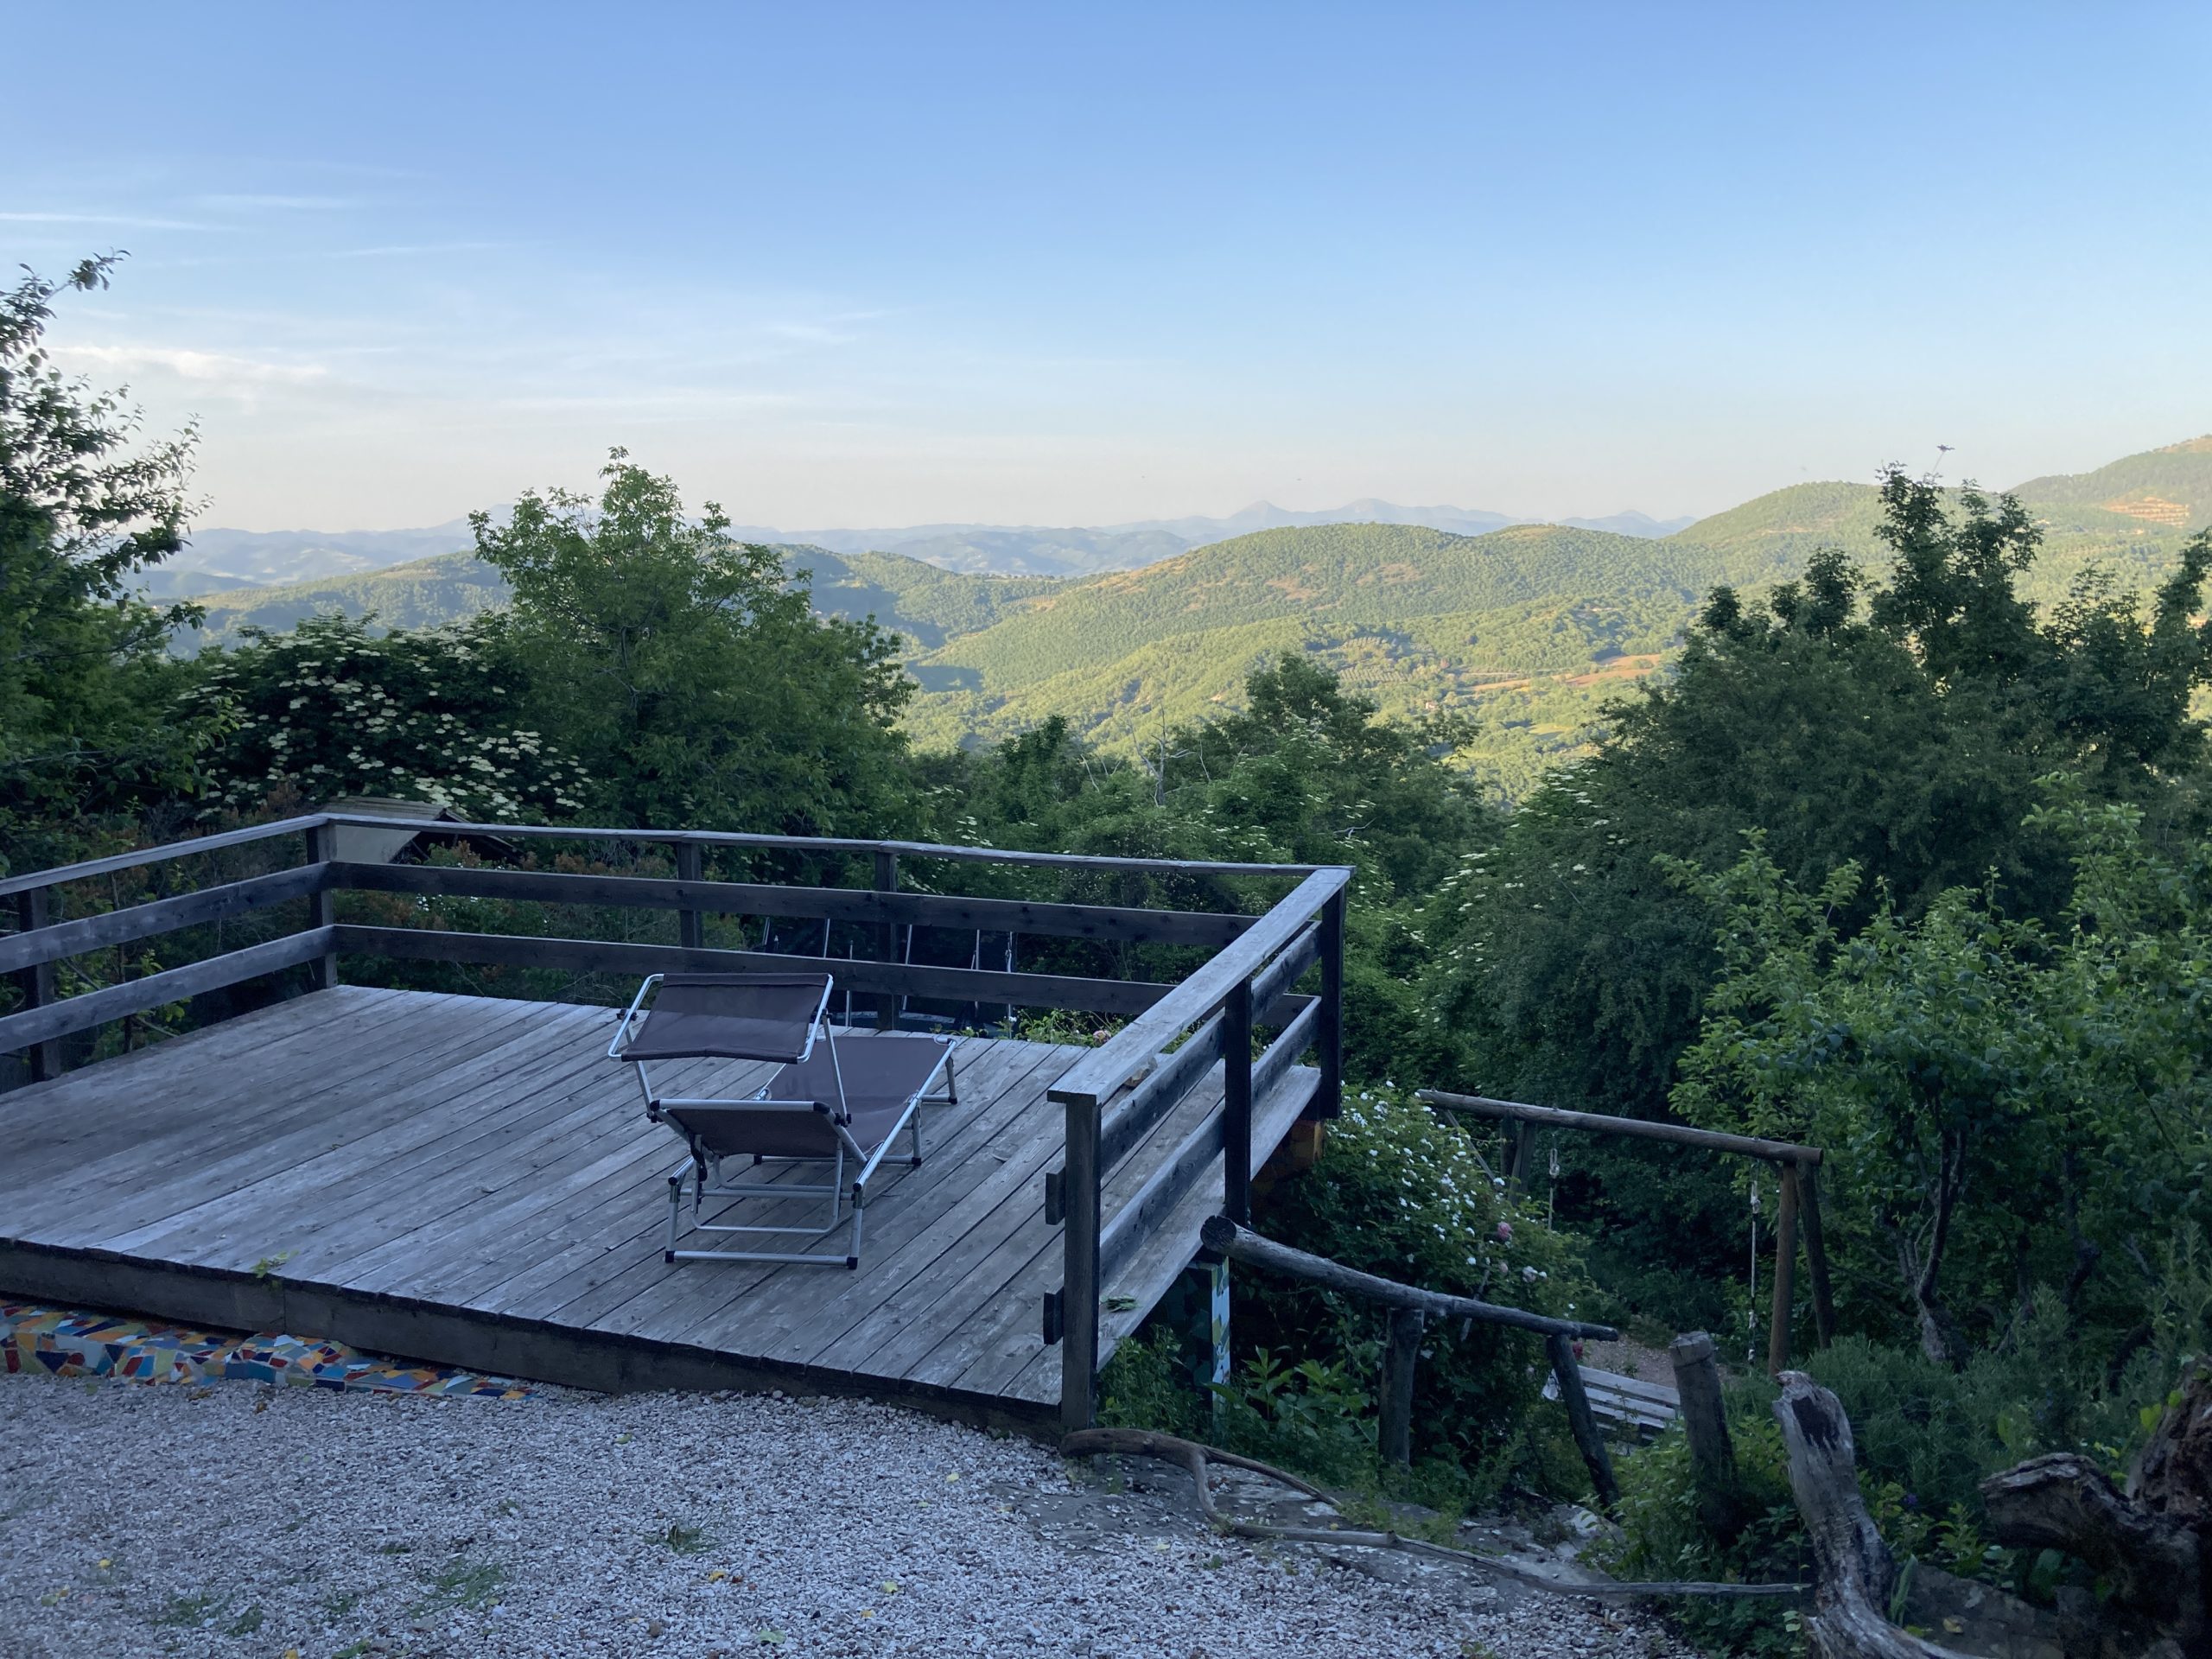 Ausblick über Hügellandschaft in Umbrien, Italien.Holzplattform mit Liegestuhl